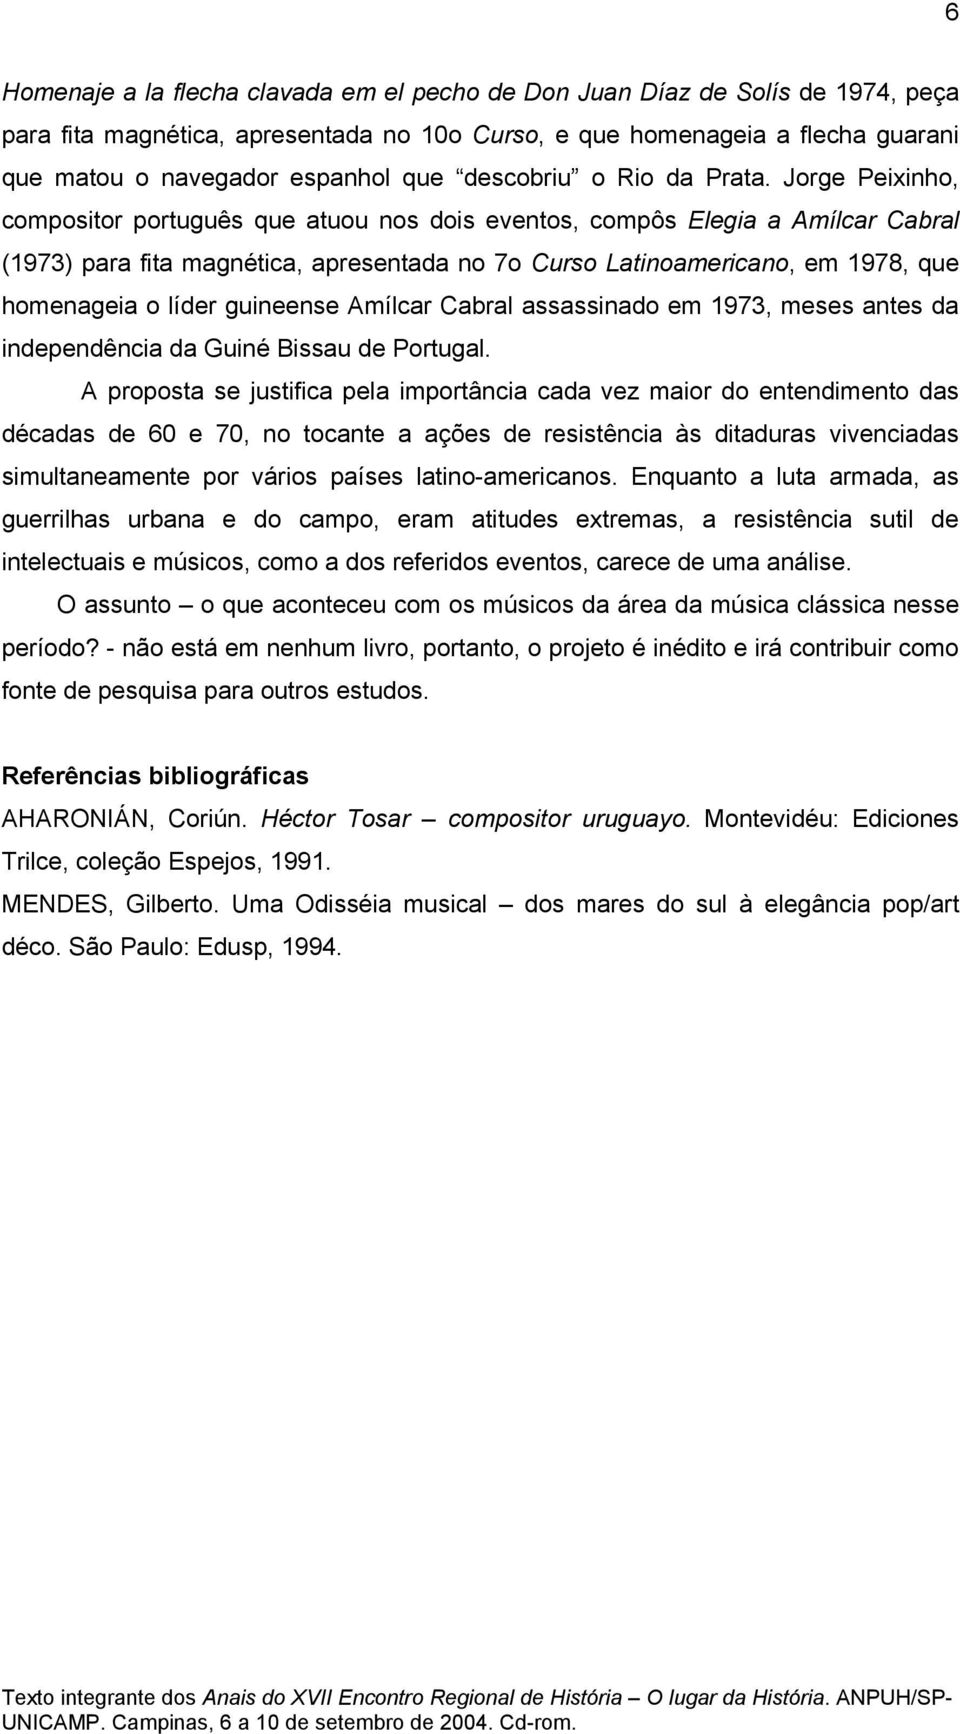 Jorge Peixinho, compositor português que atuou nos dois eventos, compôs Elegia a Amílcar Cabral (1973) para fita magnética, apresentada no 7o Curso Latinoamericano, em 1978, que homenageia o líder